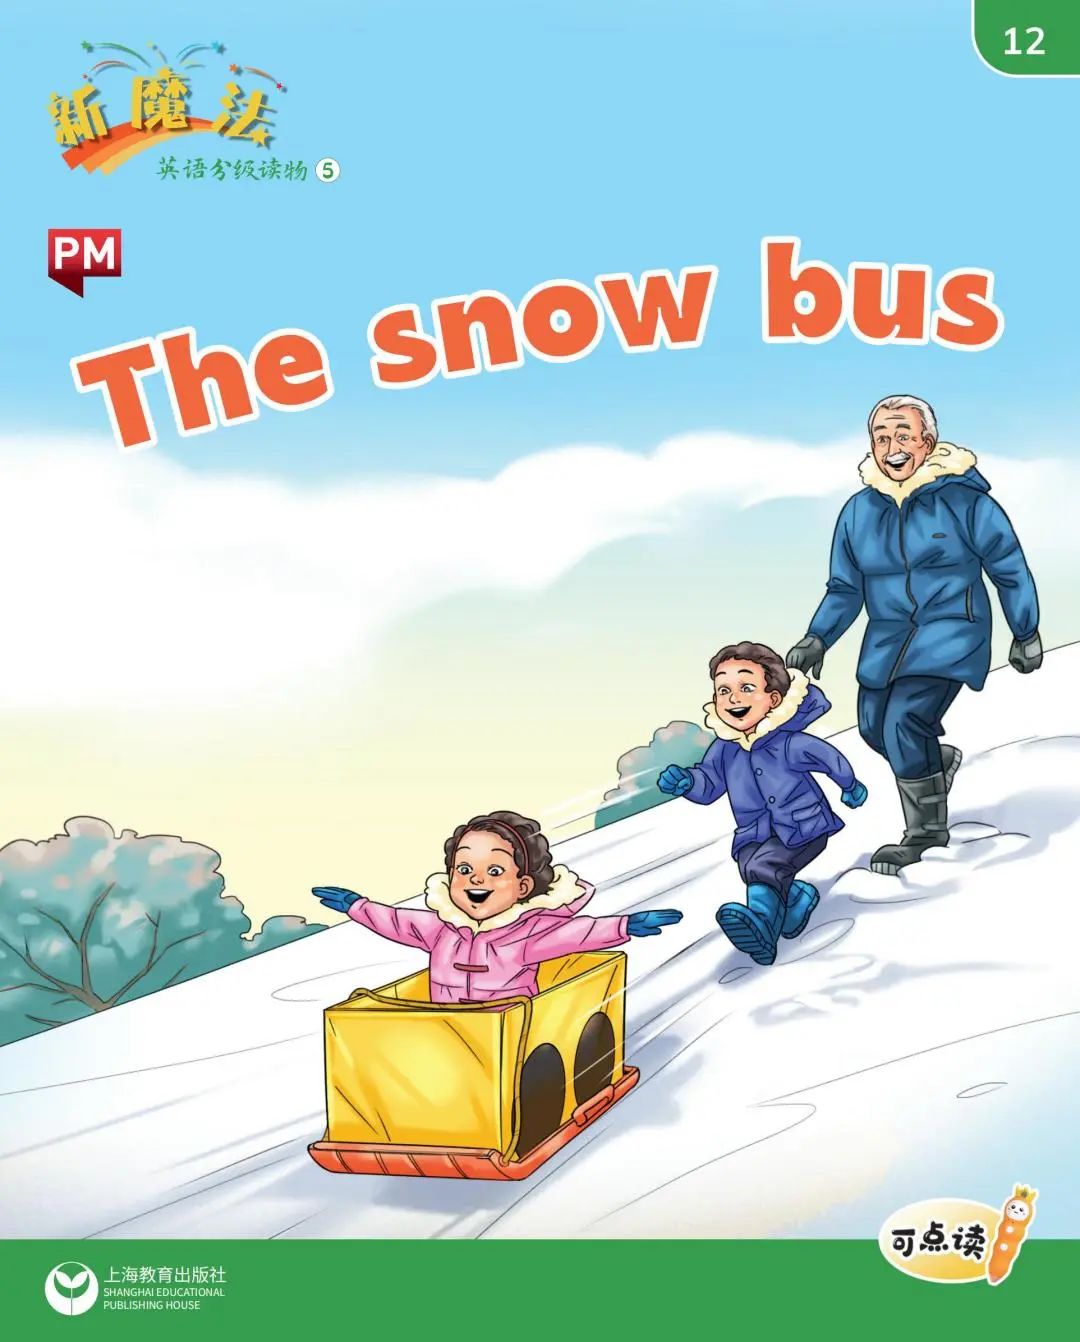 用英语介绍跟冬天有关的活动,用英语介绍跟雪有关的活动,跟冬天下雪有关的《新魔法英语分级读物》英语绘本